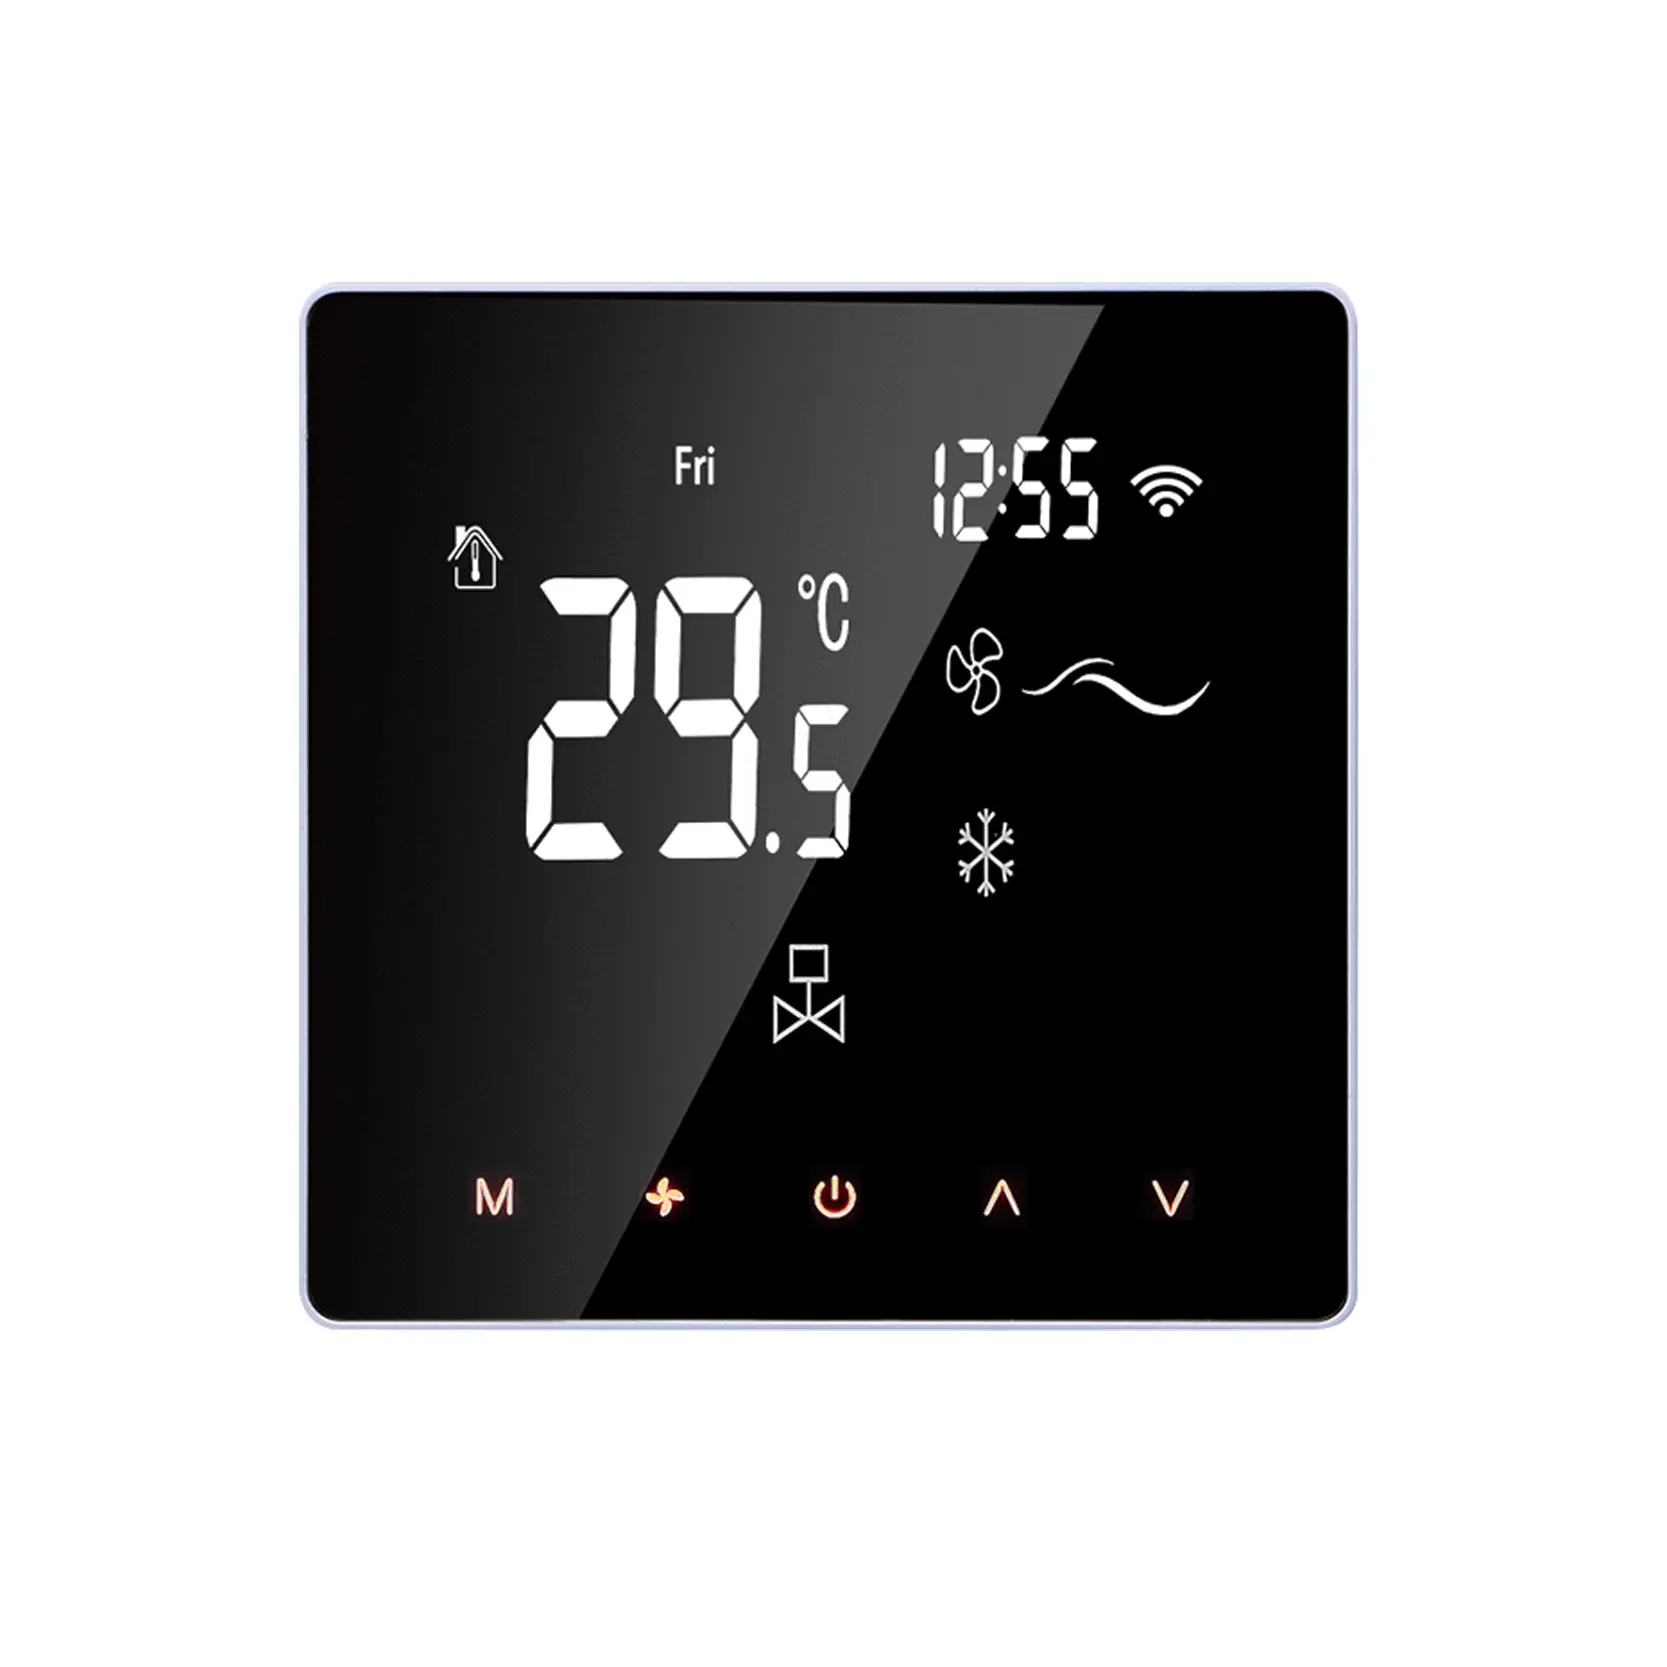 Myuet Prix d'usine ME81F Panneau à écran tactile Thermostat de climatiseur Thermostat d'ambiance avec programmable hebdomadaire